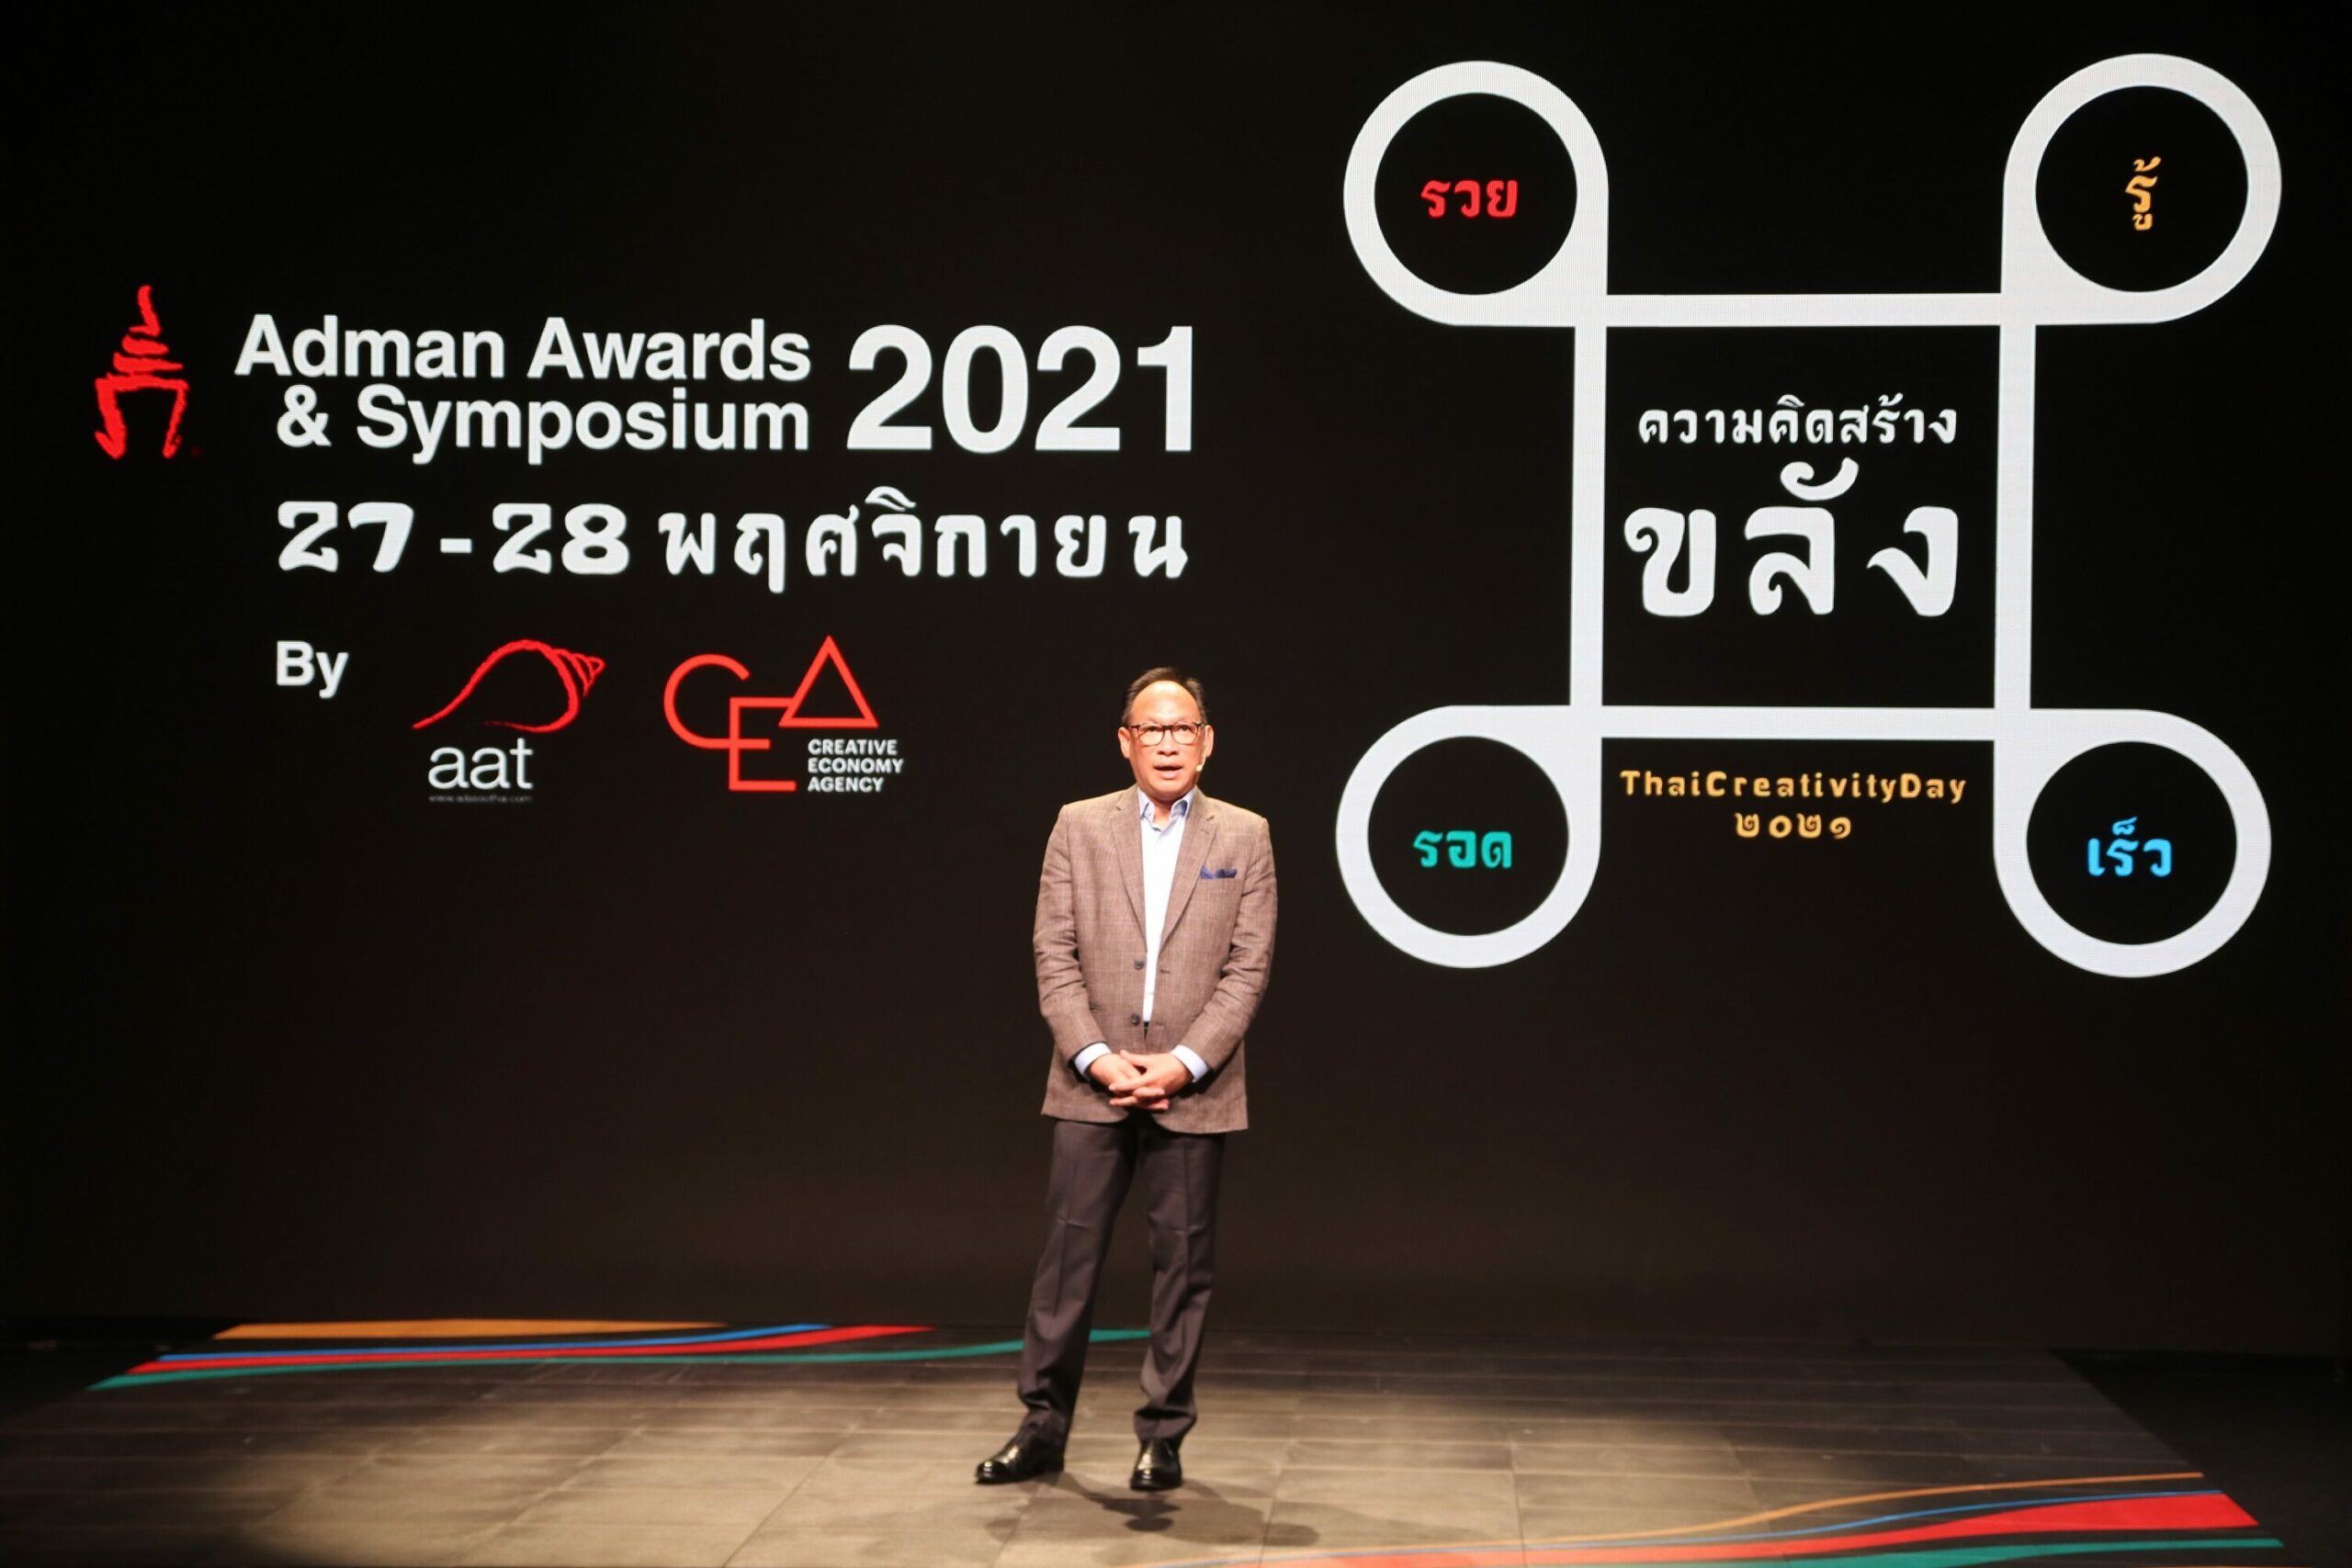 "สมาคมโฆษณาฯ" ปลื้ม กระแสตอบรับงาน "Adman Awards & Symposium 2021"ออนไลน์ ดีเกินคาด